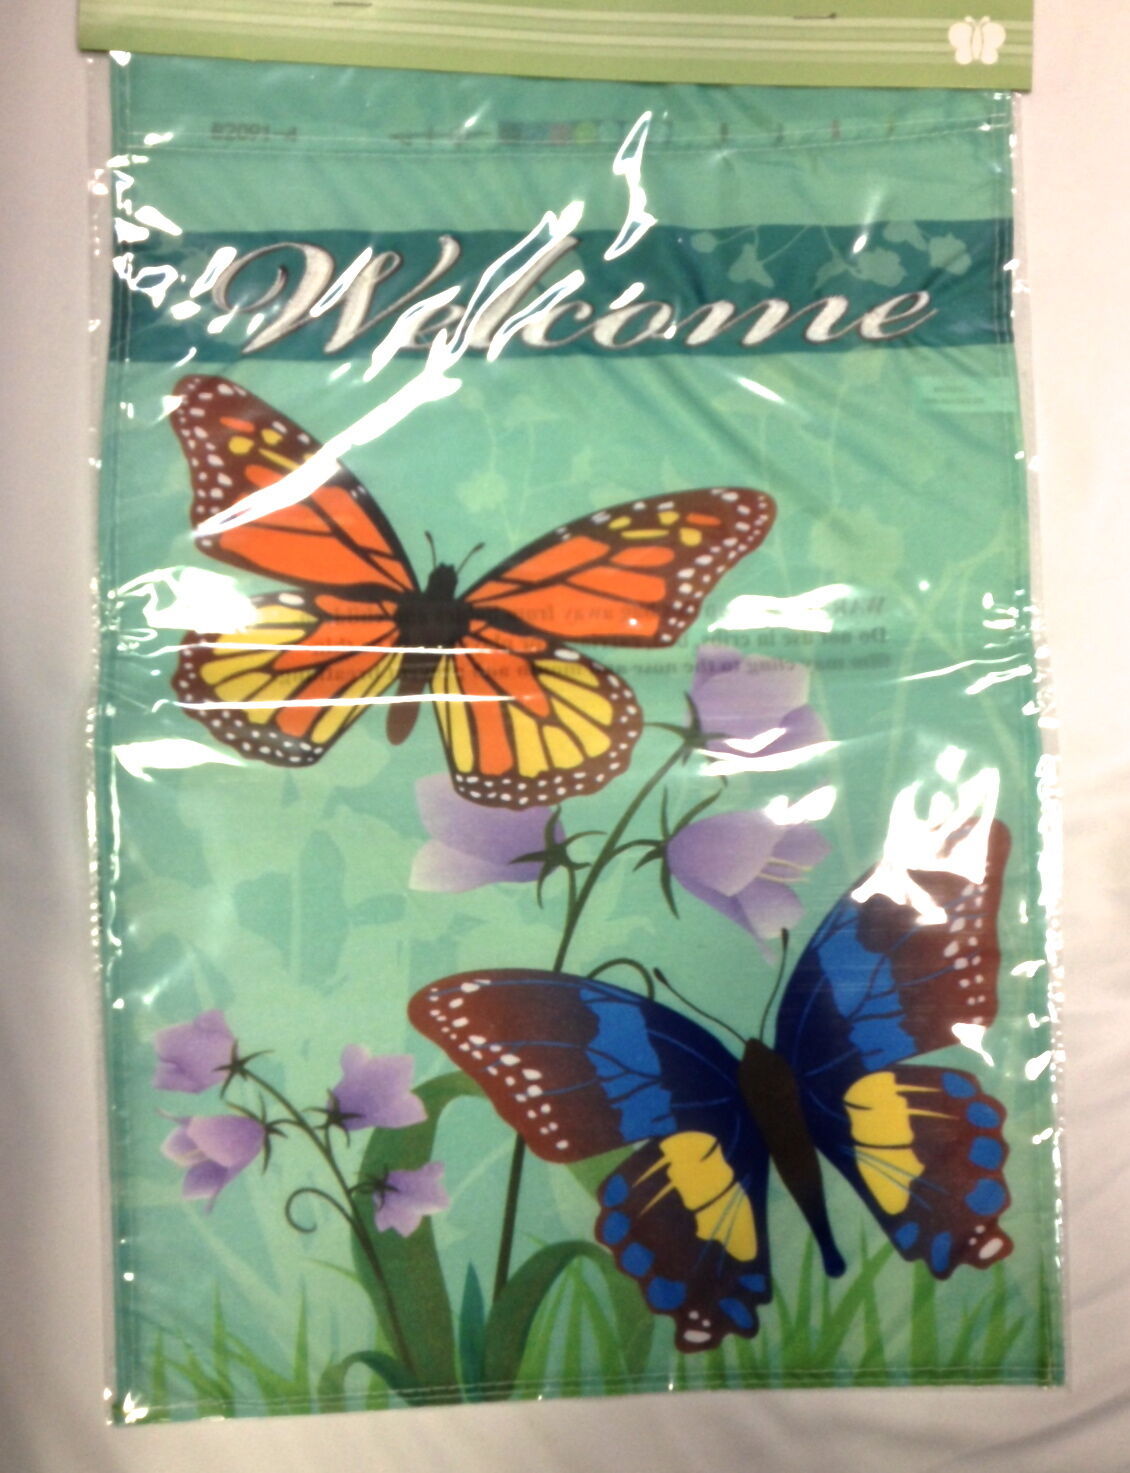 Green "Welcome" 12" x 18" Garden Flag with Butterflies - $3.95